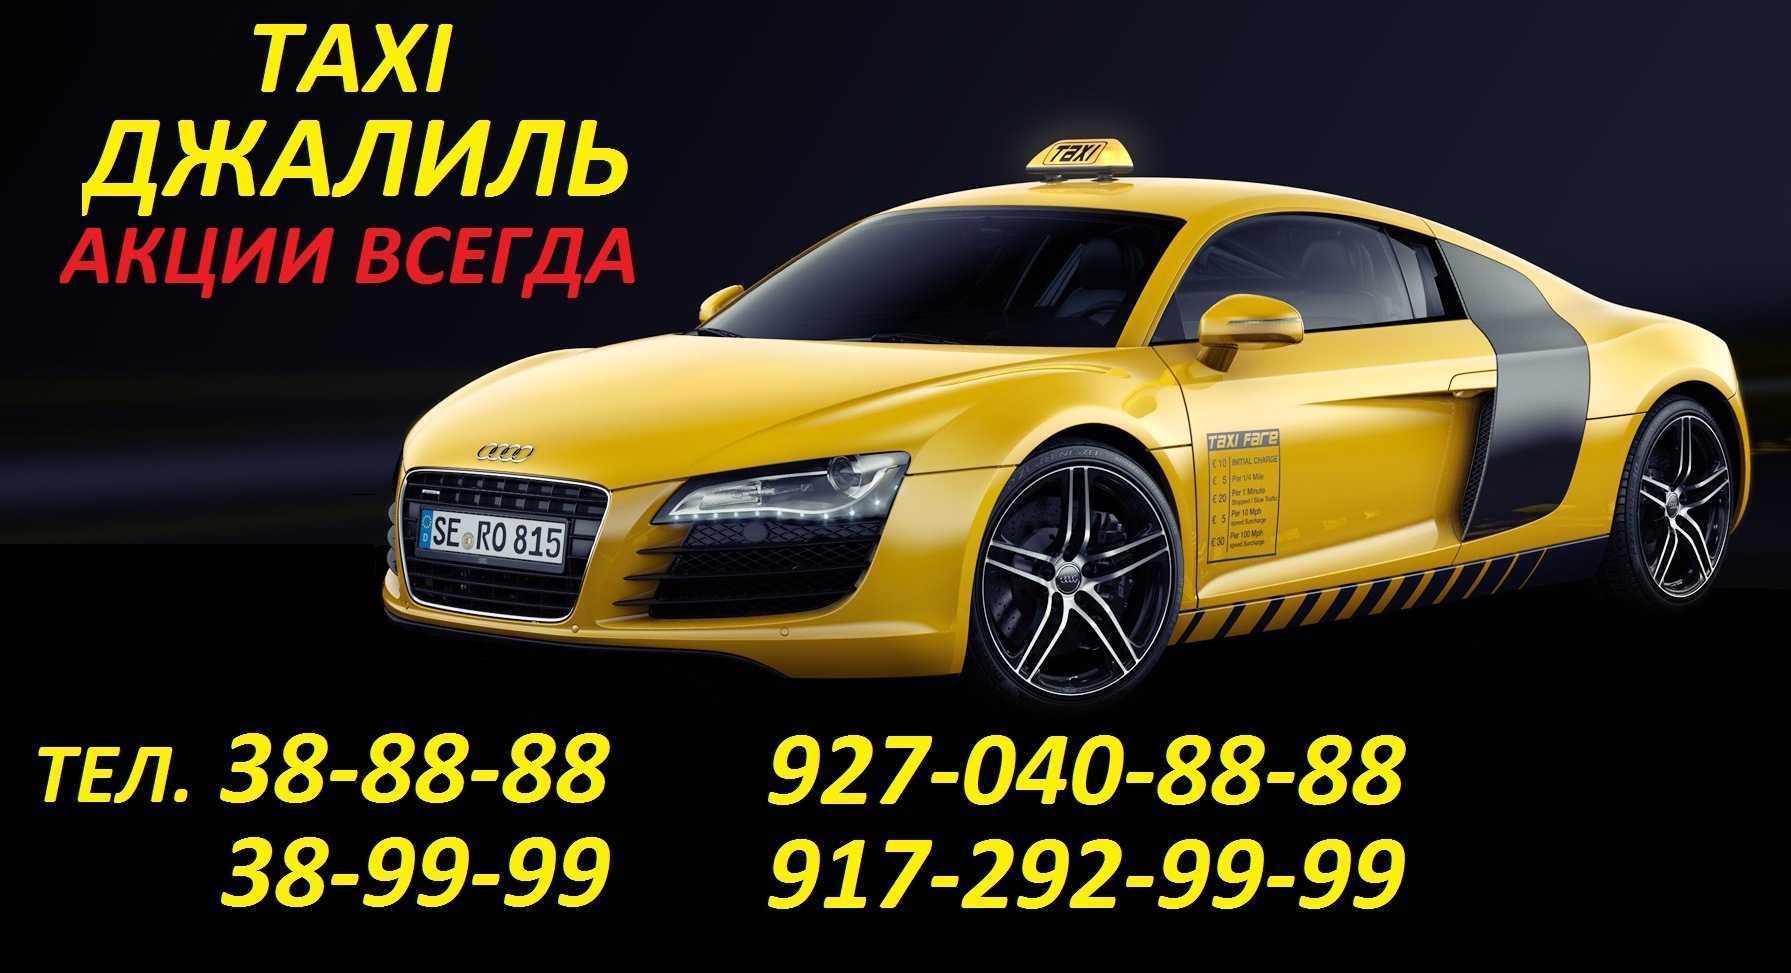 Такси Джалиль. Такси Джалиль номера. Номера такси в Джалиле. Такси в Джалиле. Дешевое такси набережных челнов